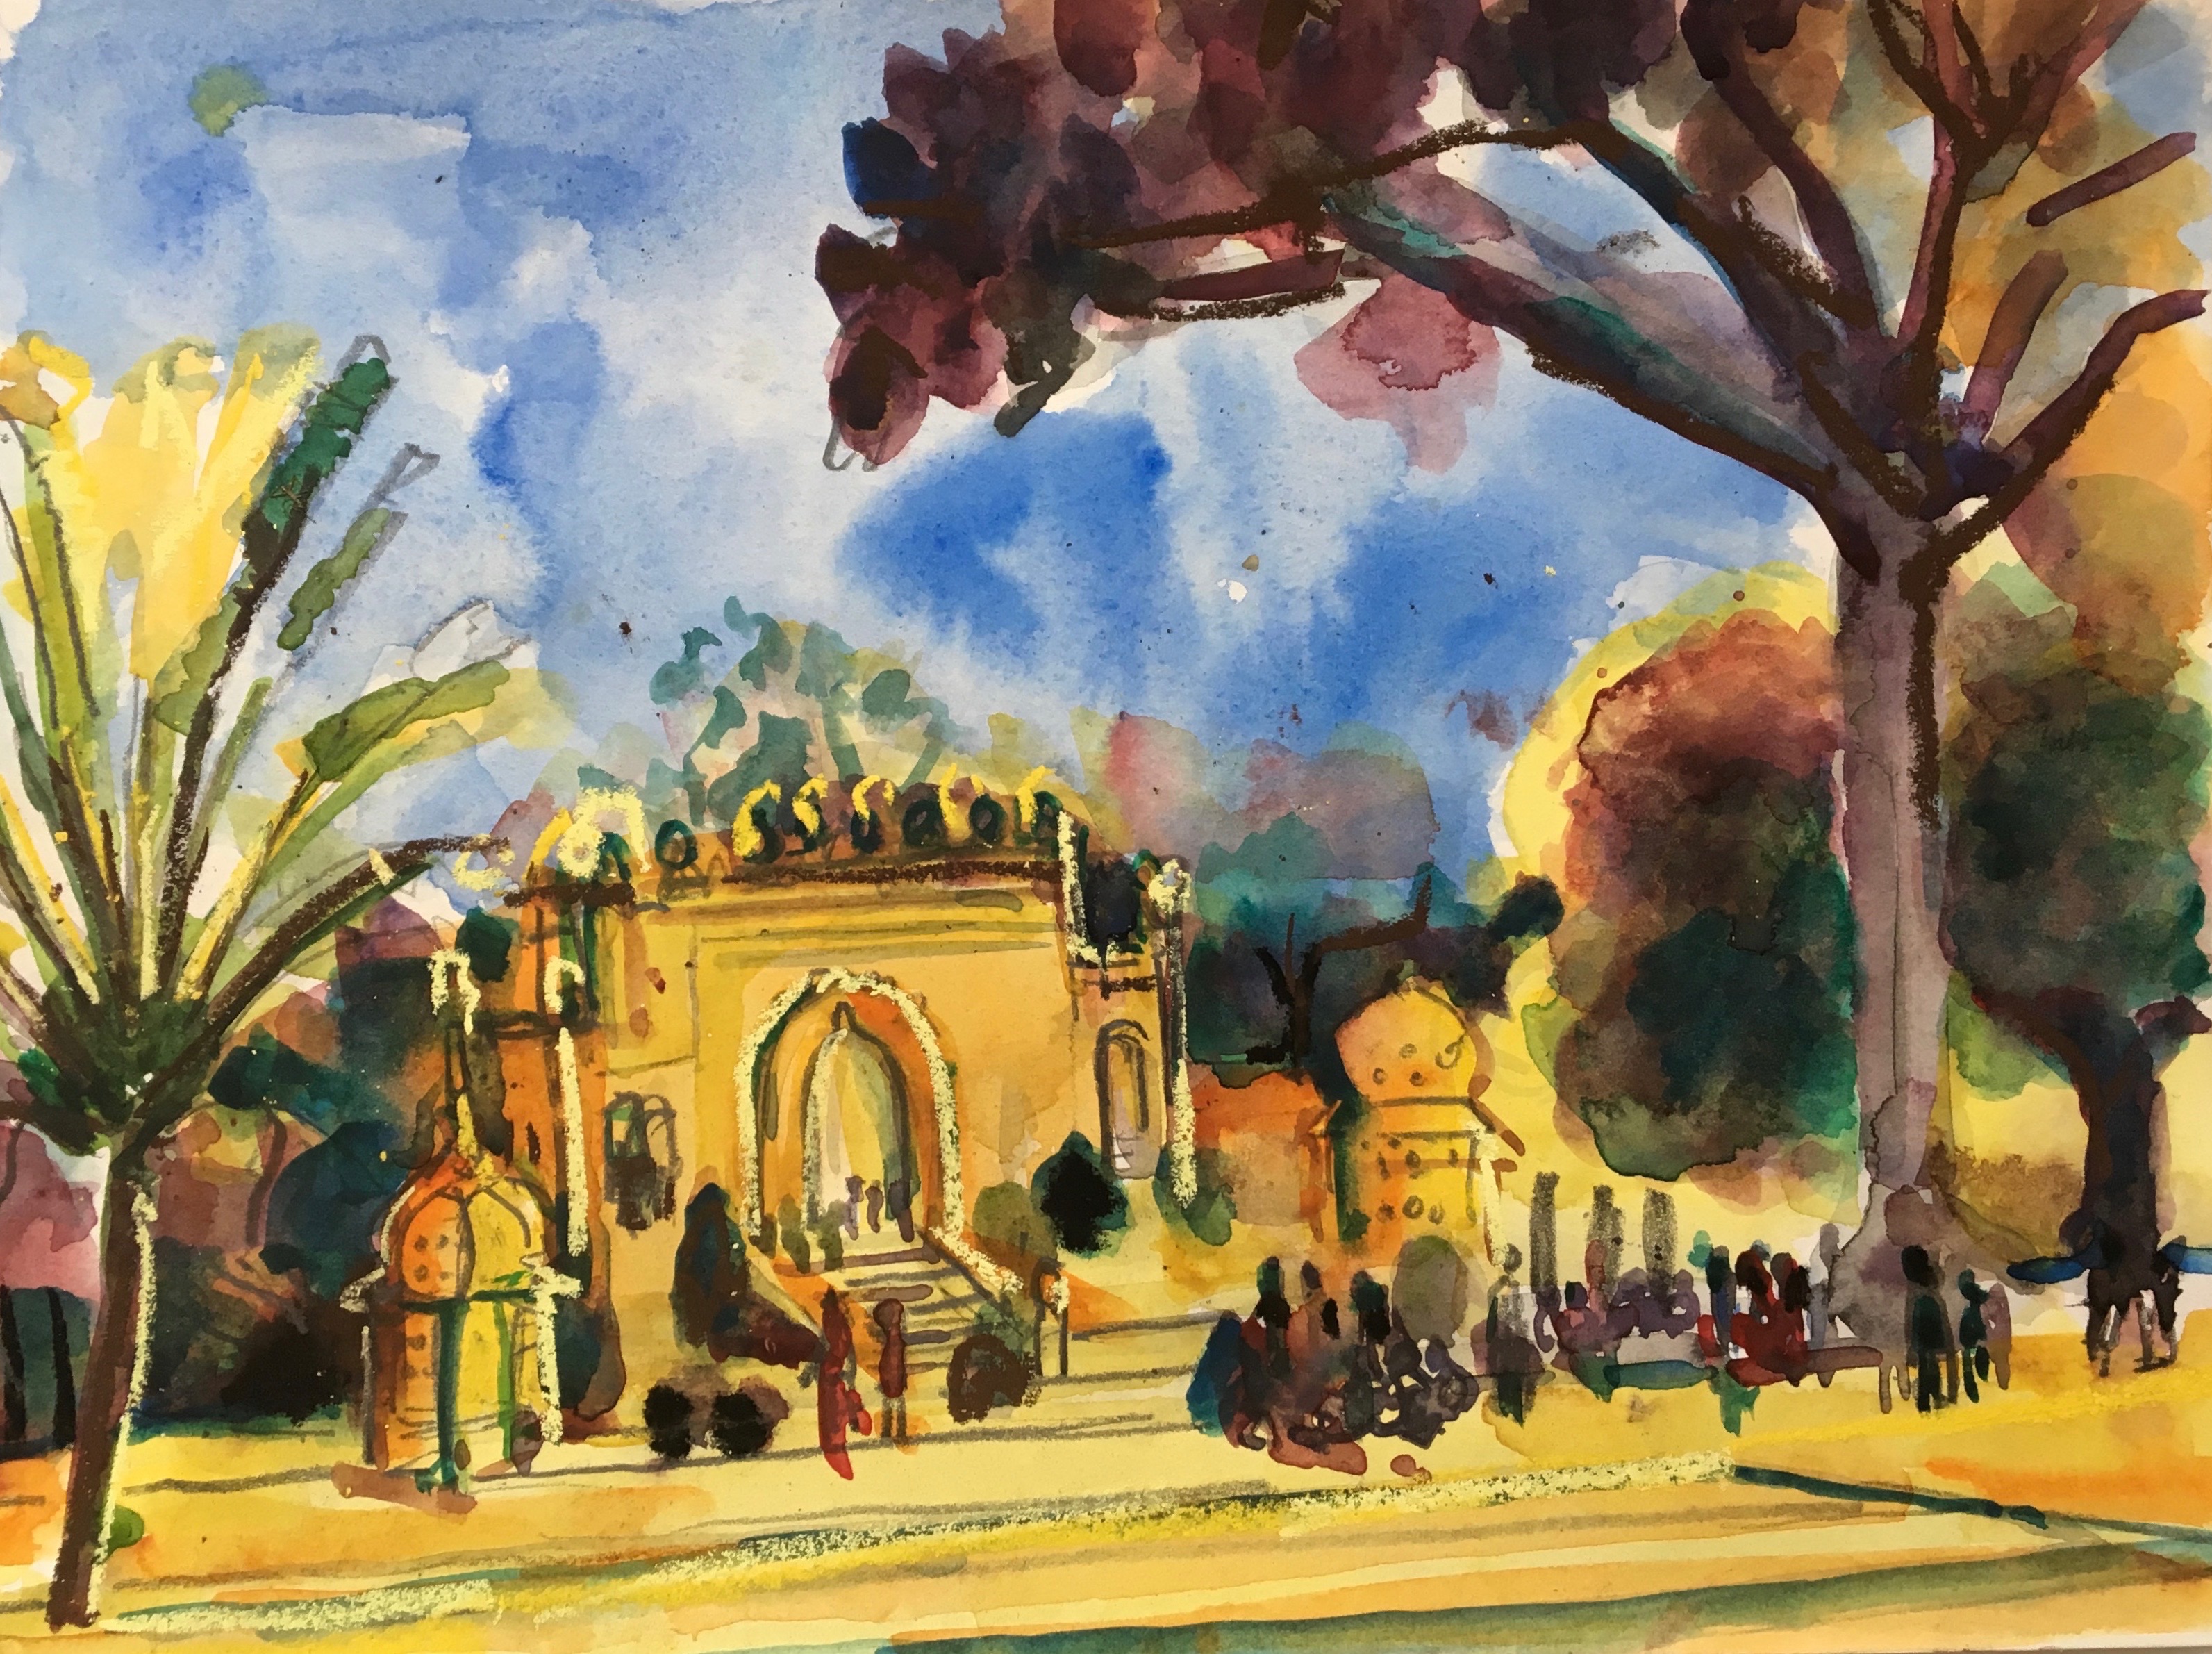 Gateway Mysore Palace
(Tippu Sultan's Summer Palace)
Karnataka
